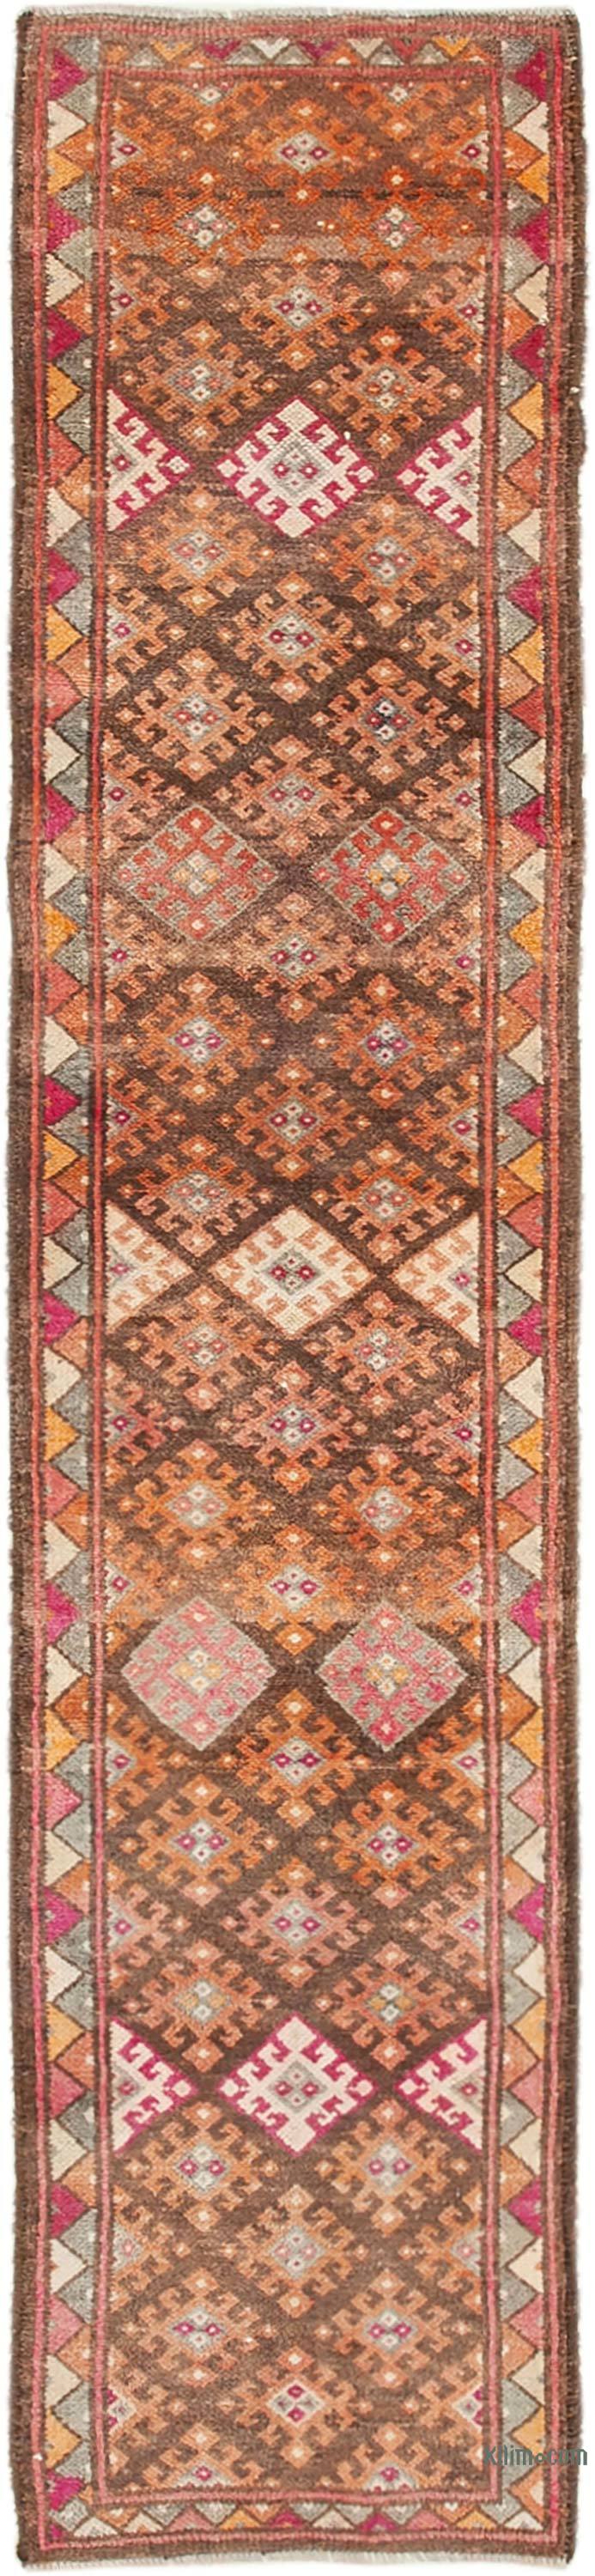 Alfombra Turca Vintage de pasillo - 84 cm x 375 cm - K0054354